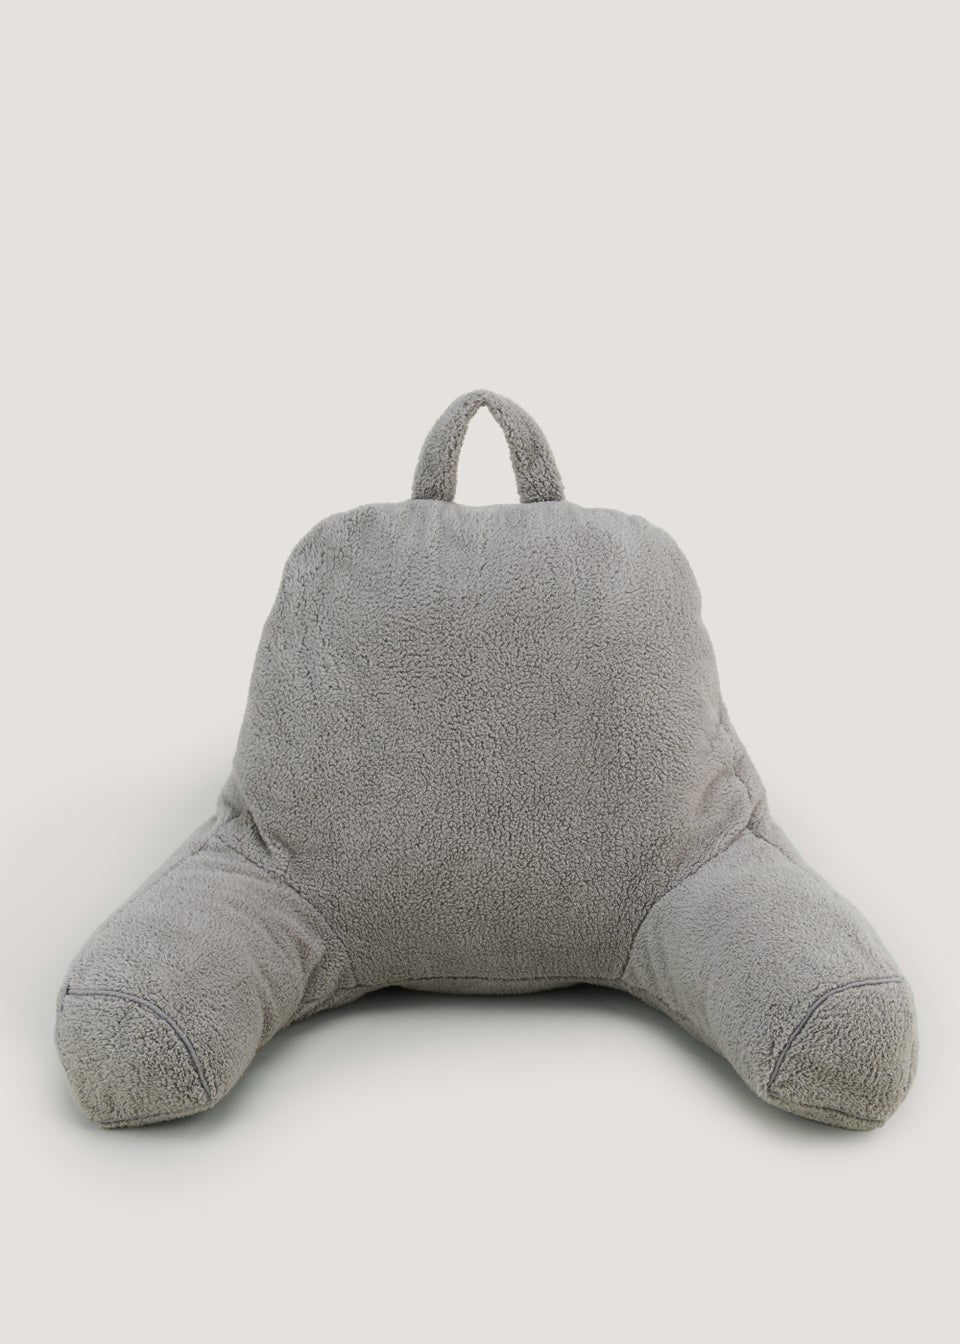 Grey Teddy Fleece Cuddle Cushion (70cm x 45cm x 50cm)